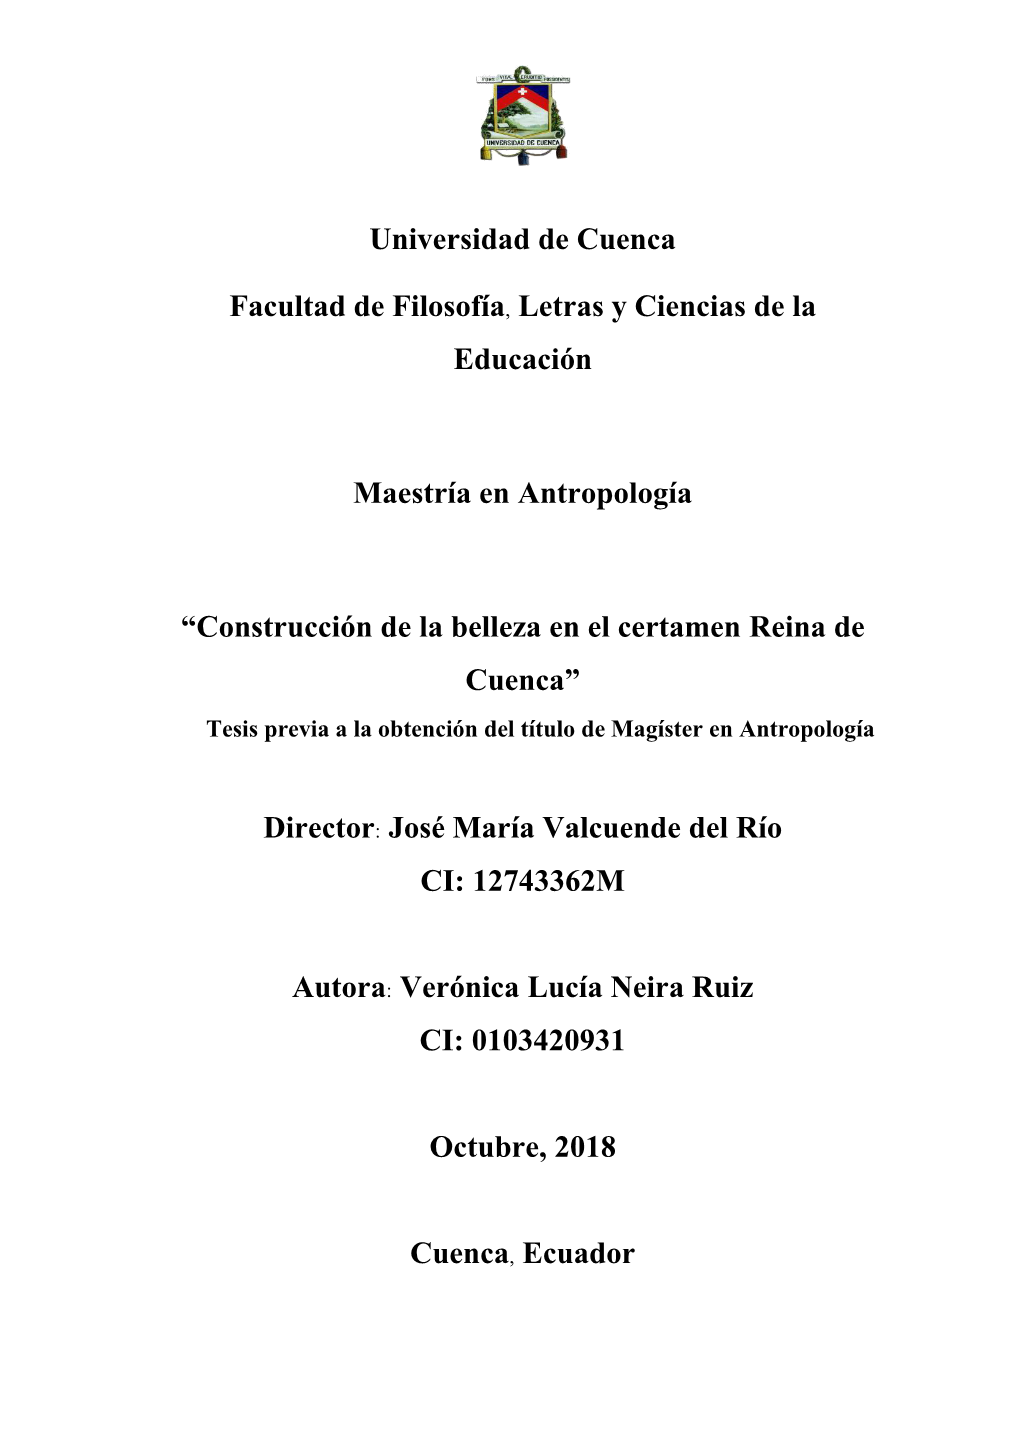 Construcción De La Belleza En El Certamen Reina De Cuenca” Tesis Previa a La Obtención Del Título De Magíster En Antropología